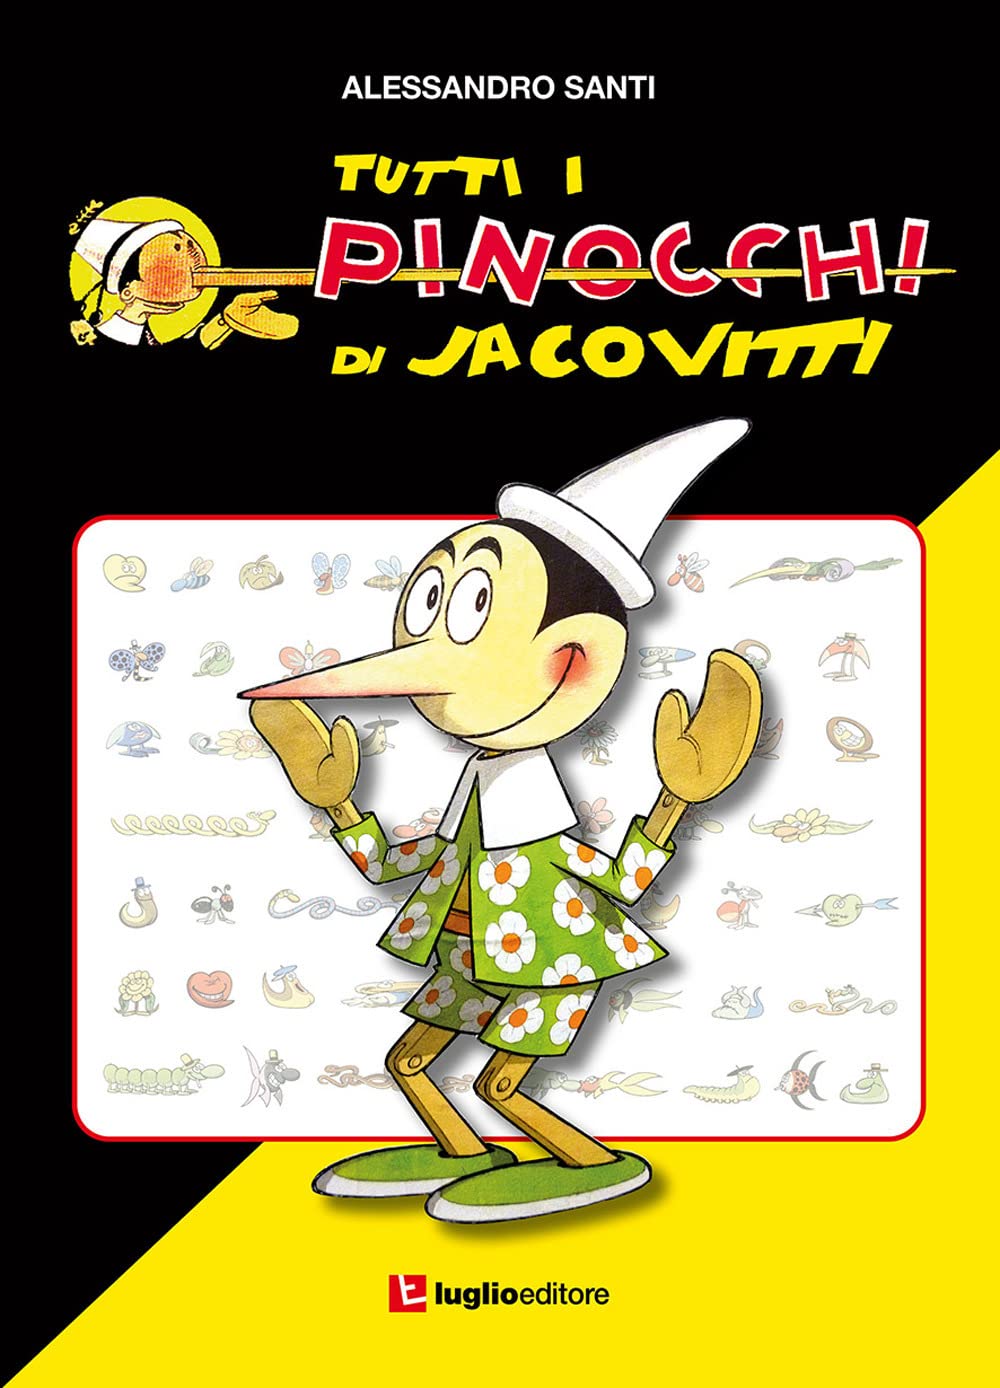 Tutti i Pinocchi di Jacovitti di Alessandro Santi